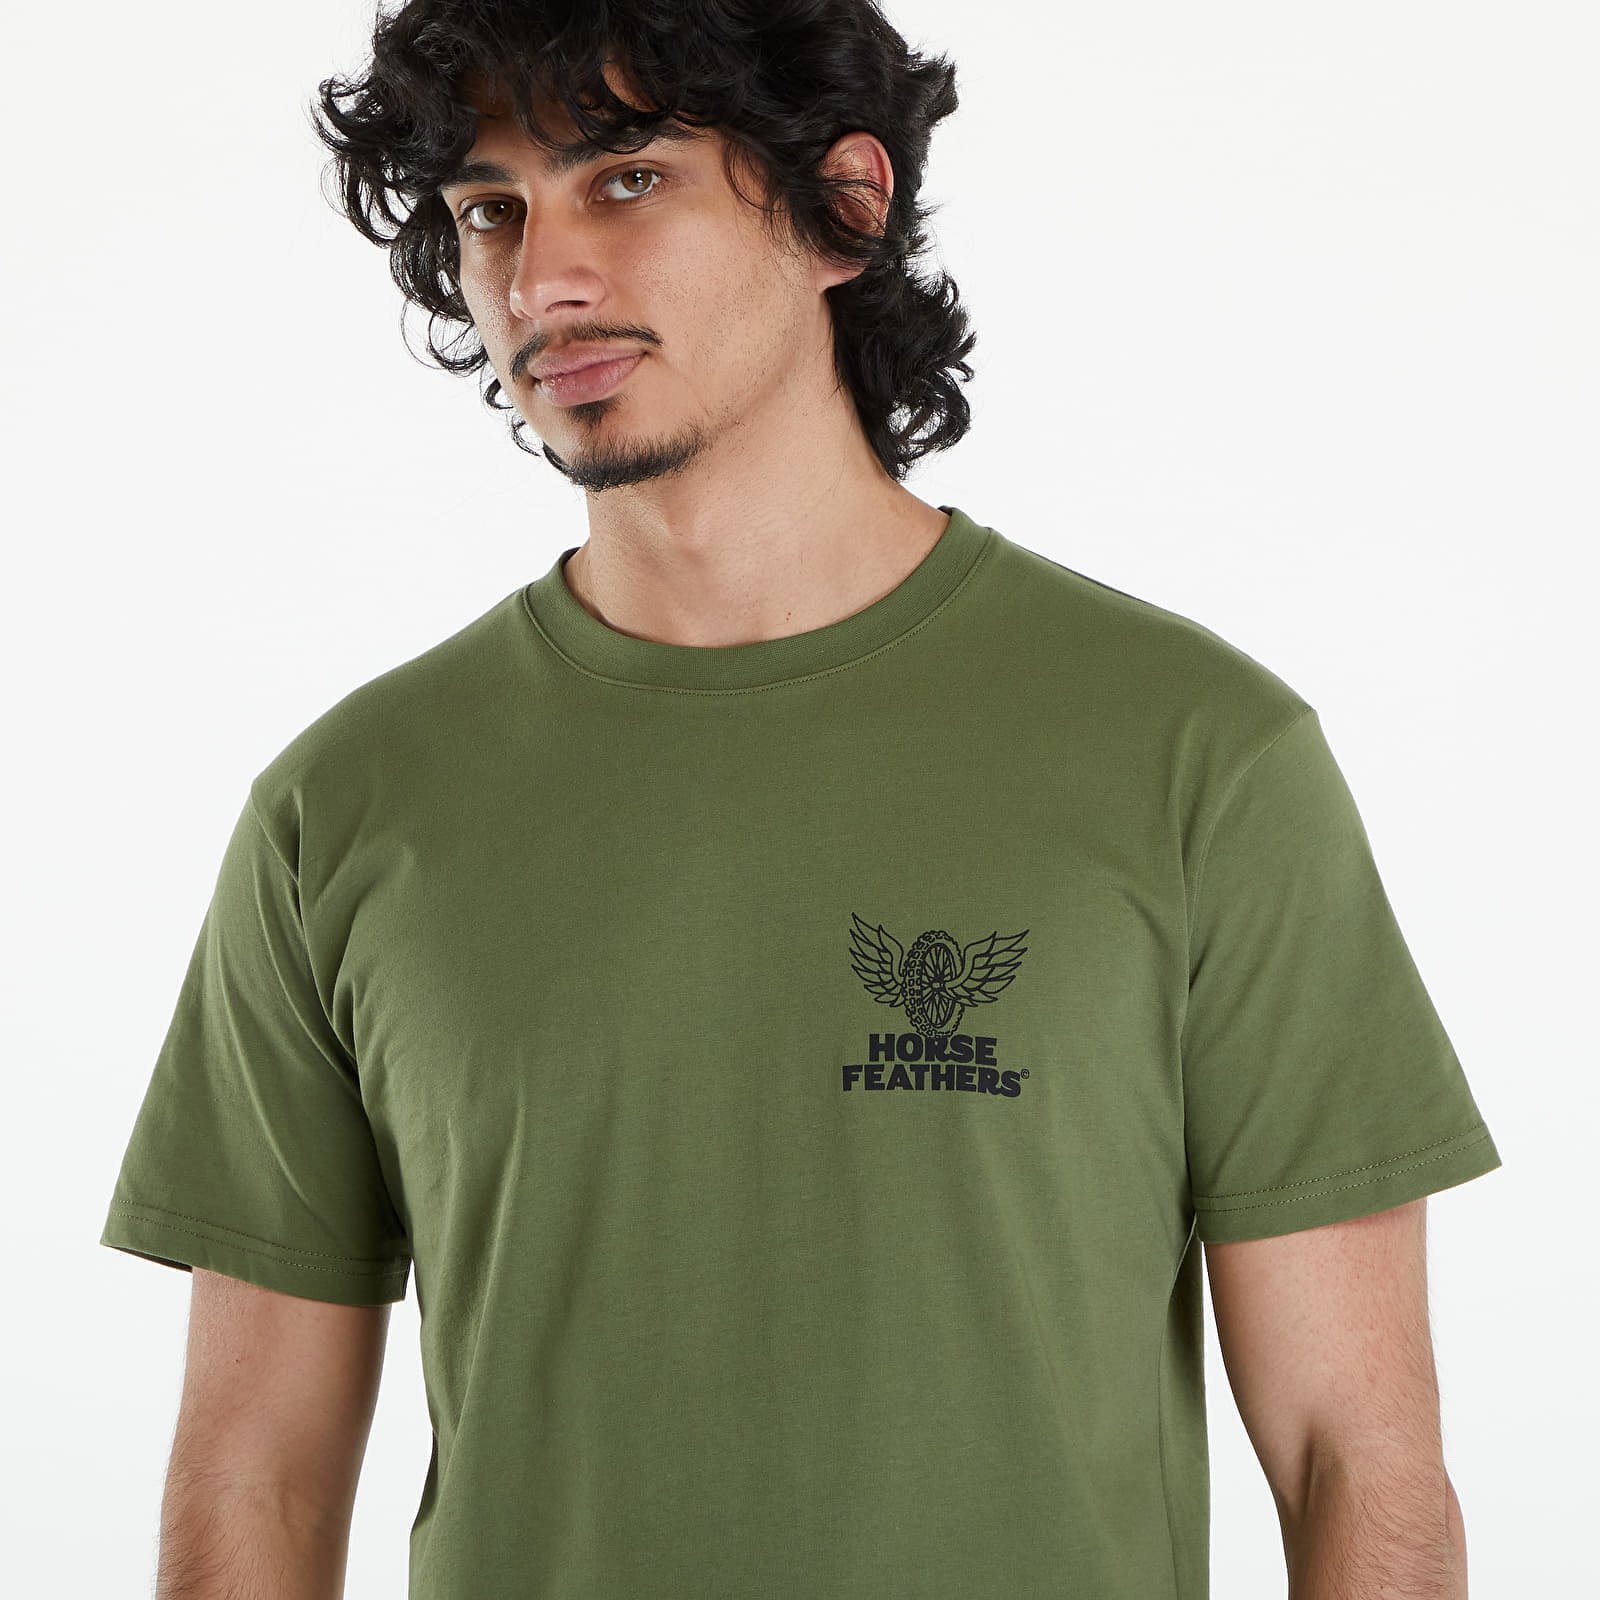 Wheel Tech T-Shirt Loden Green